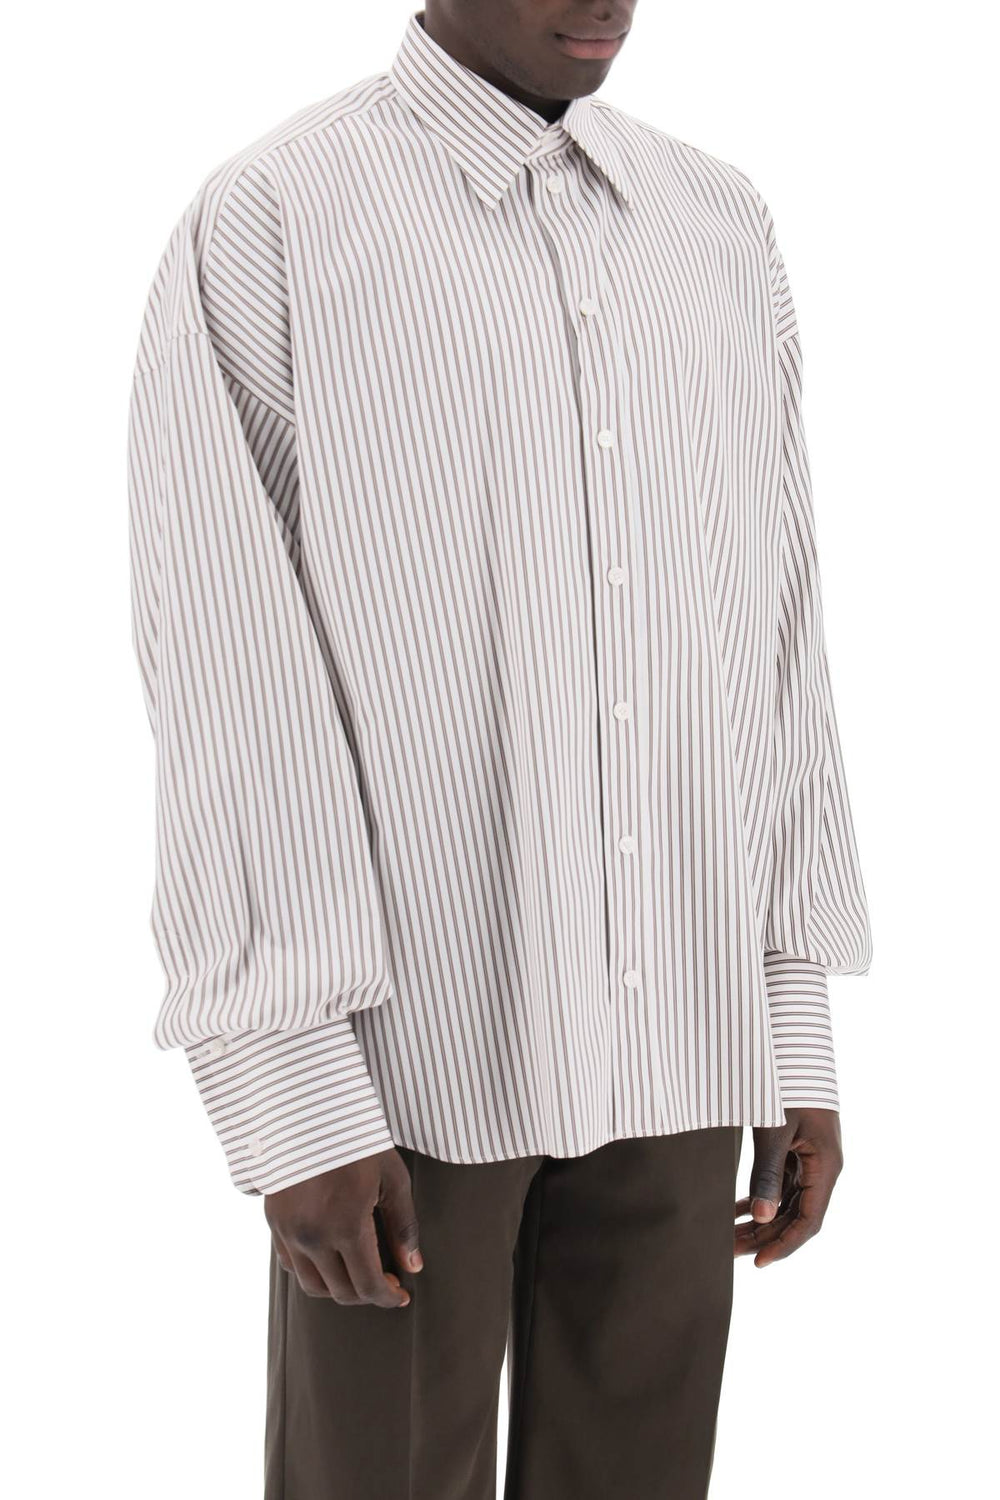 Dolce & gabbana "oversized striped poplin shirt-1